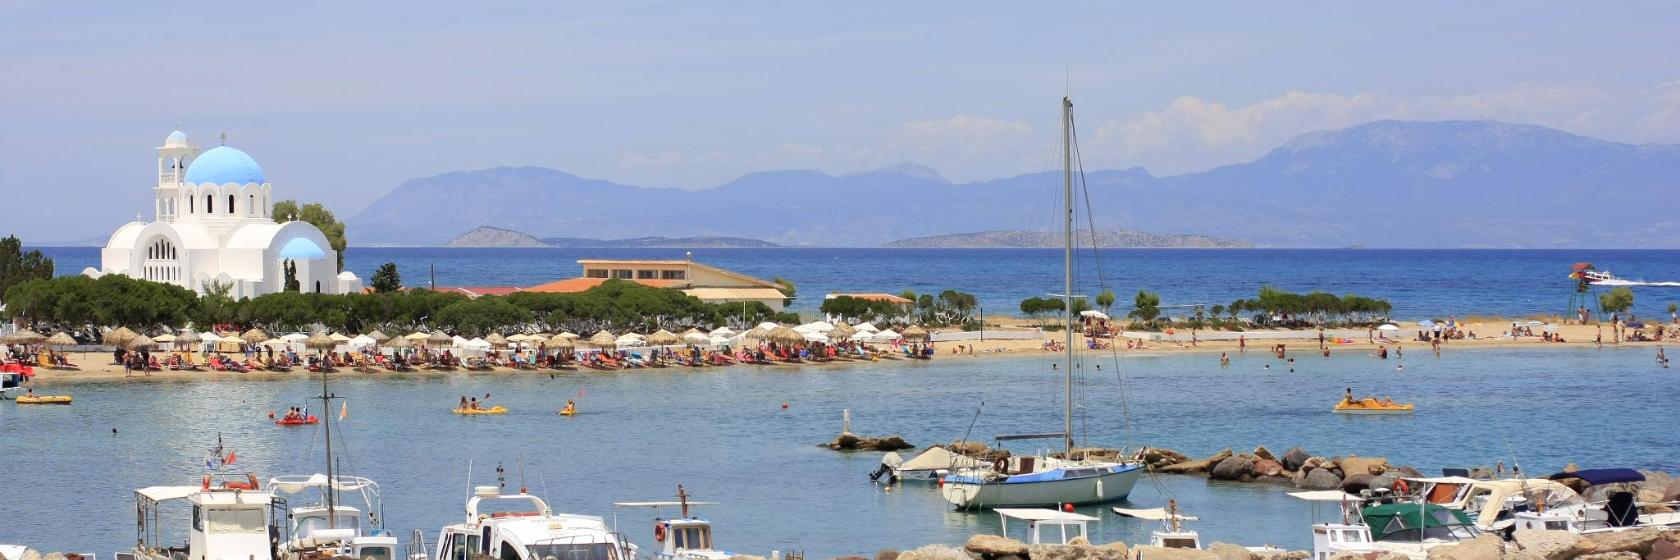 Τα 10 Καλύτερα Ξενοδοχεία σε Αγκίστρι – Πού να μείνετε σε Αγκίστρι και στη  γύρω περιοχή, Ελλάδα